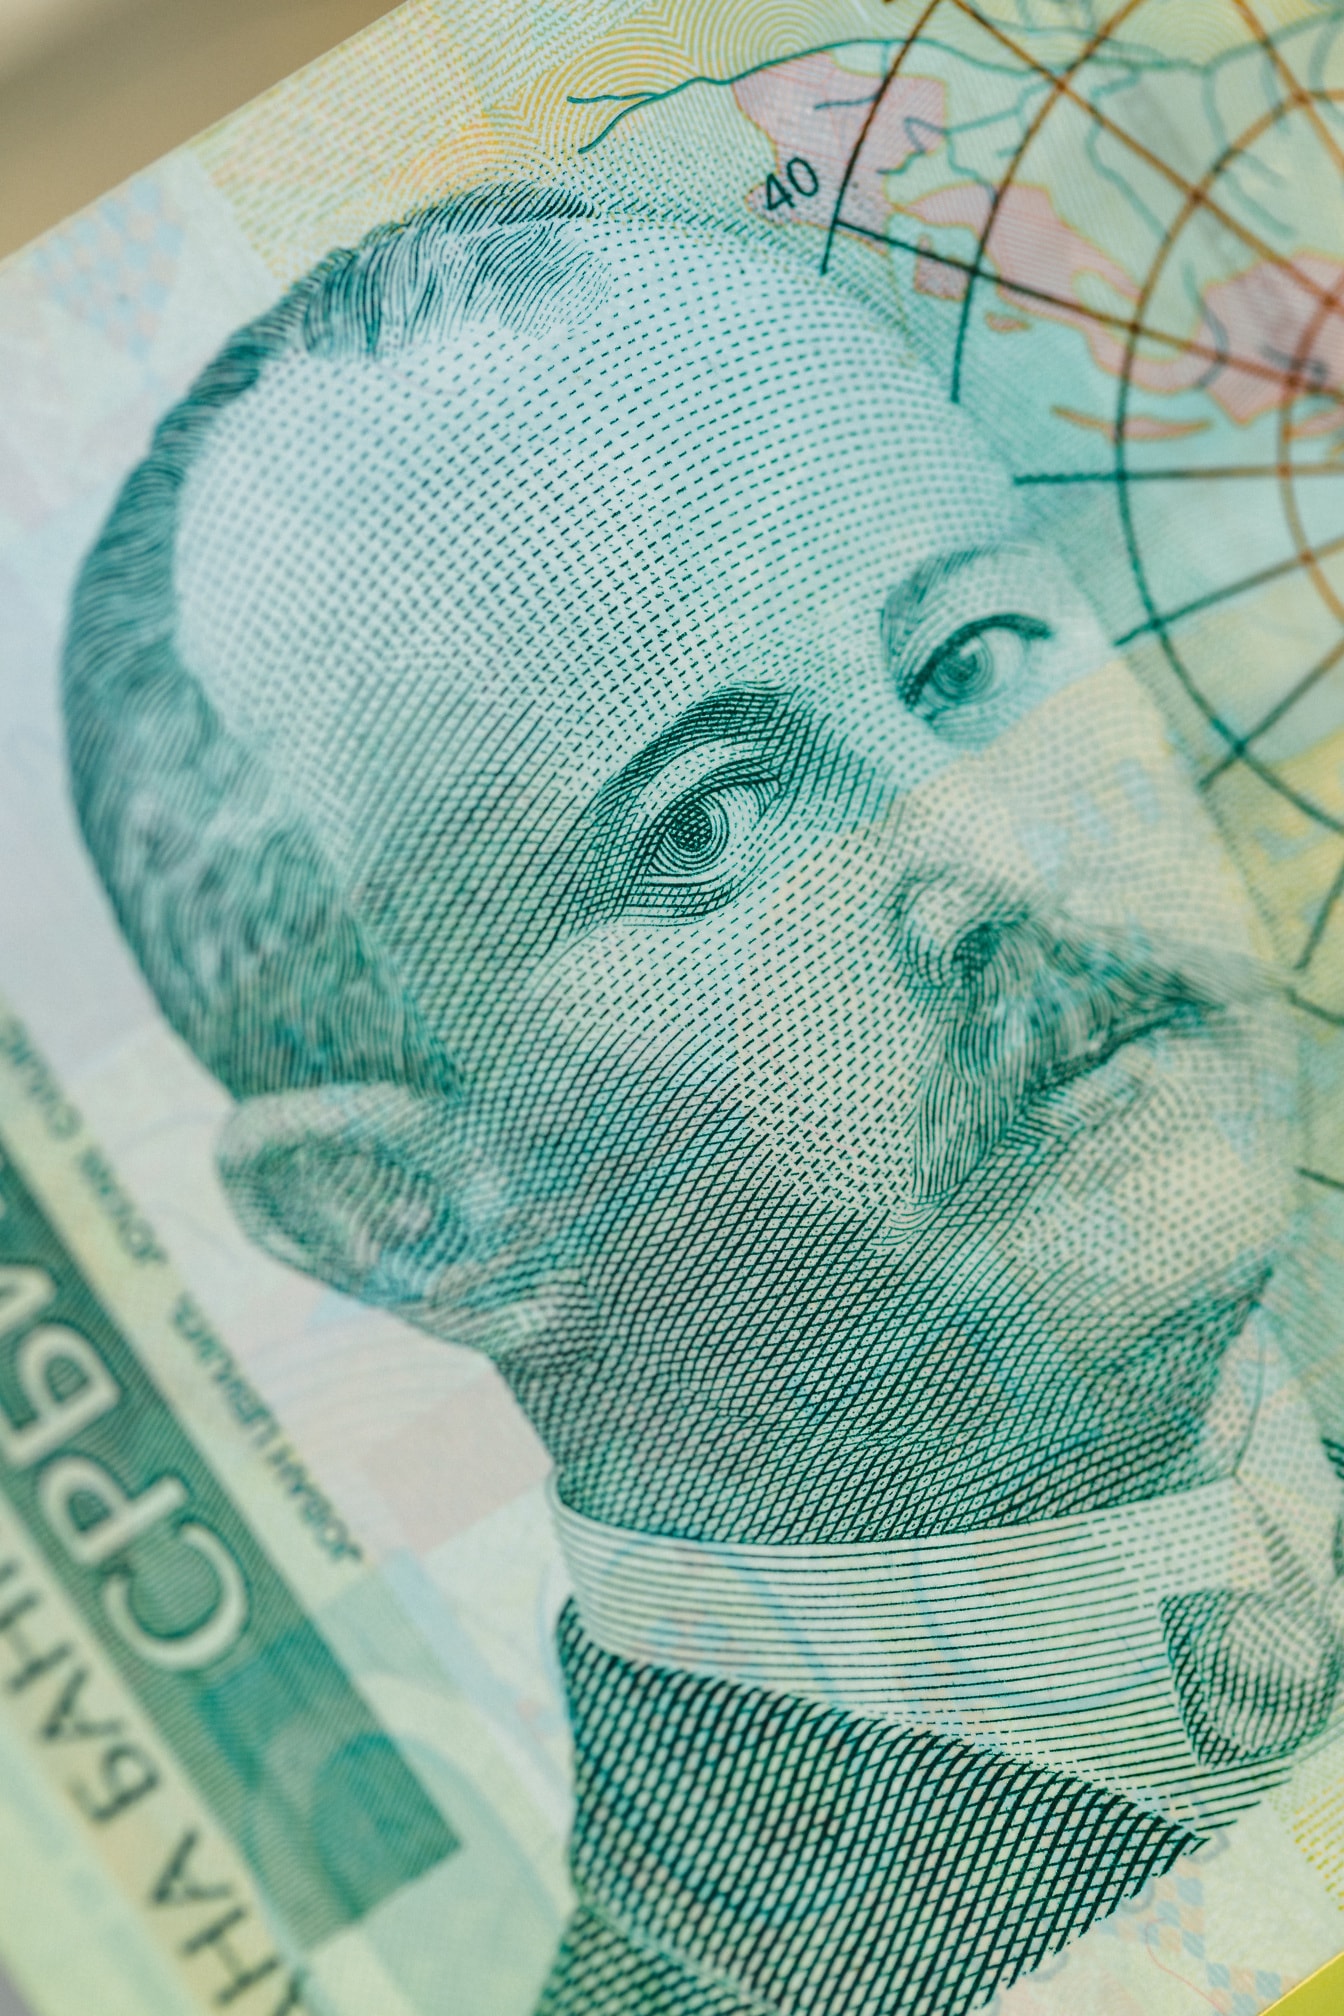 Krupni plan novčanice srbijanskog dinara s portretom Jovane Cvijić